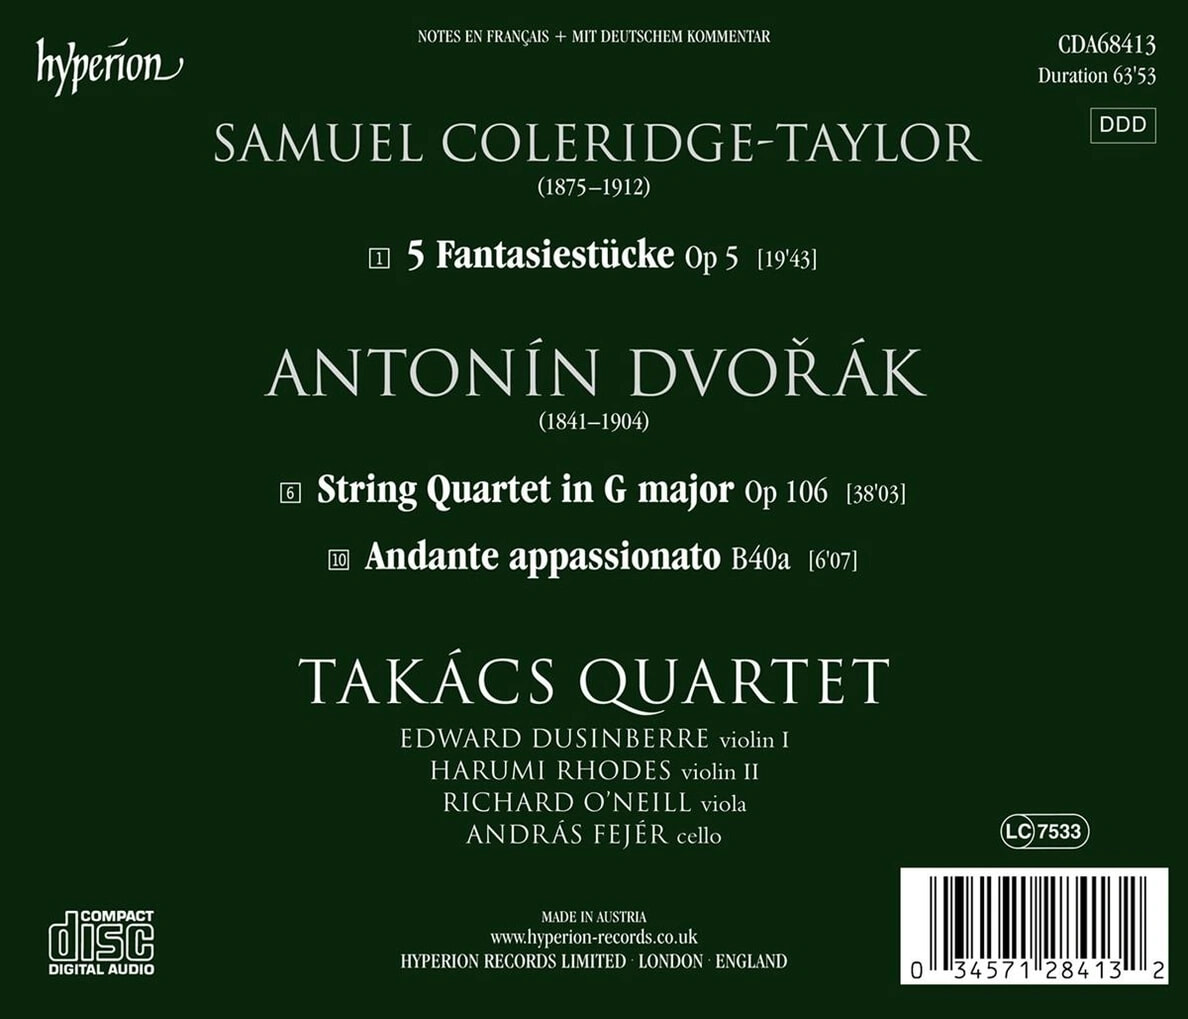 Takacs Quartet 드보르작: 현악 4중주 13번 / 콜리지-테일러: 환상적 소품 (Dvo?ak: String Quartet Op. 106 / Coleridge-Taylor: Fantasiestucke)